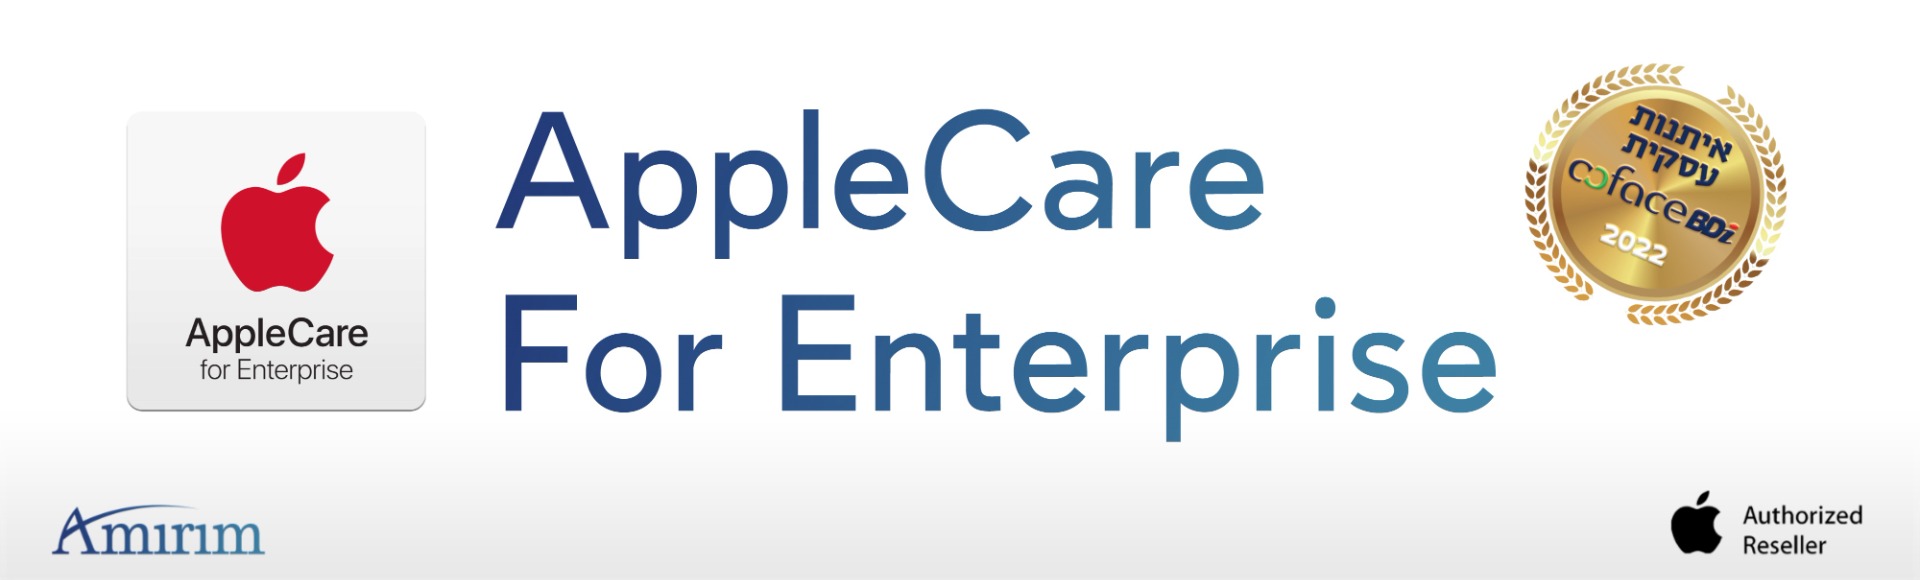 Amirim AppleCare for Enterprise